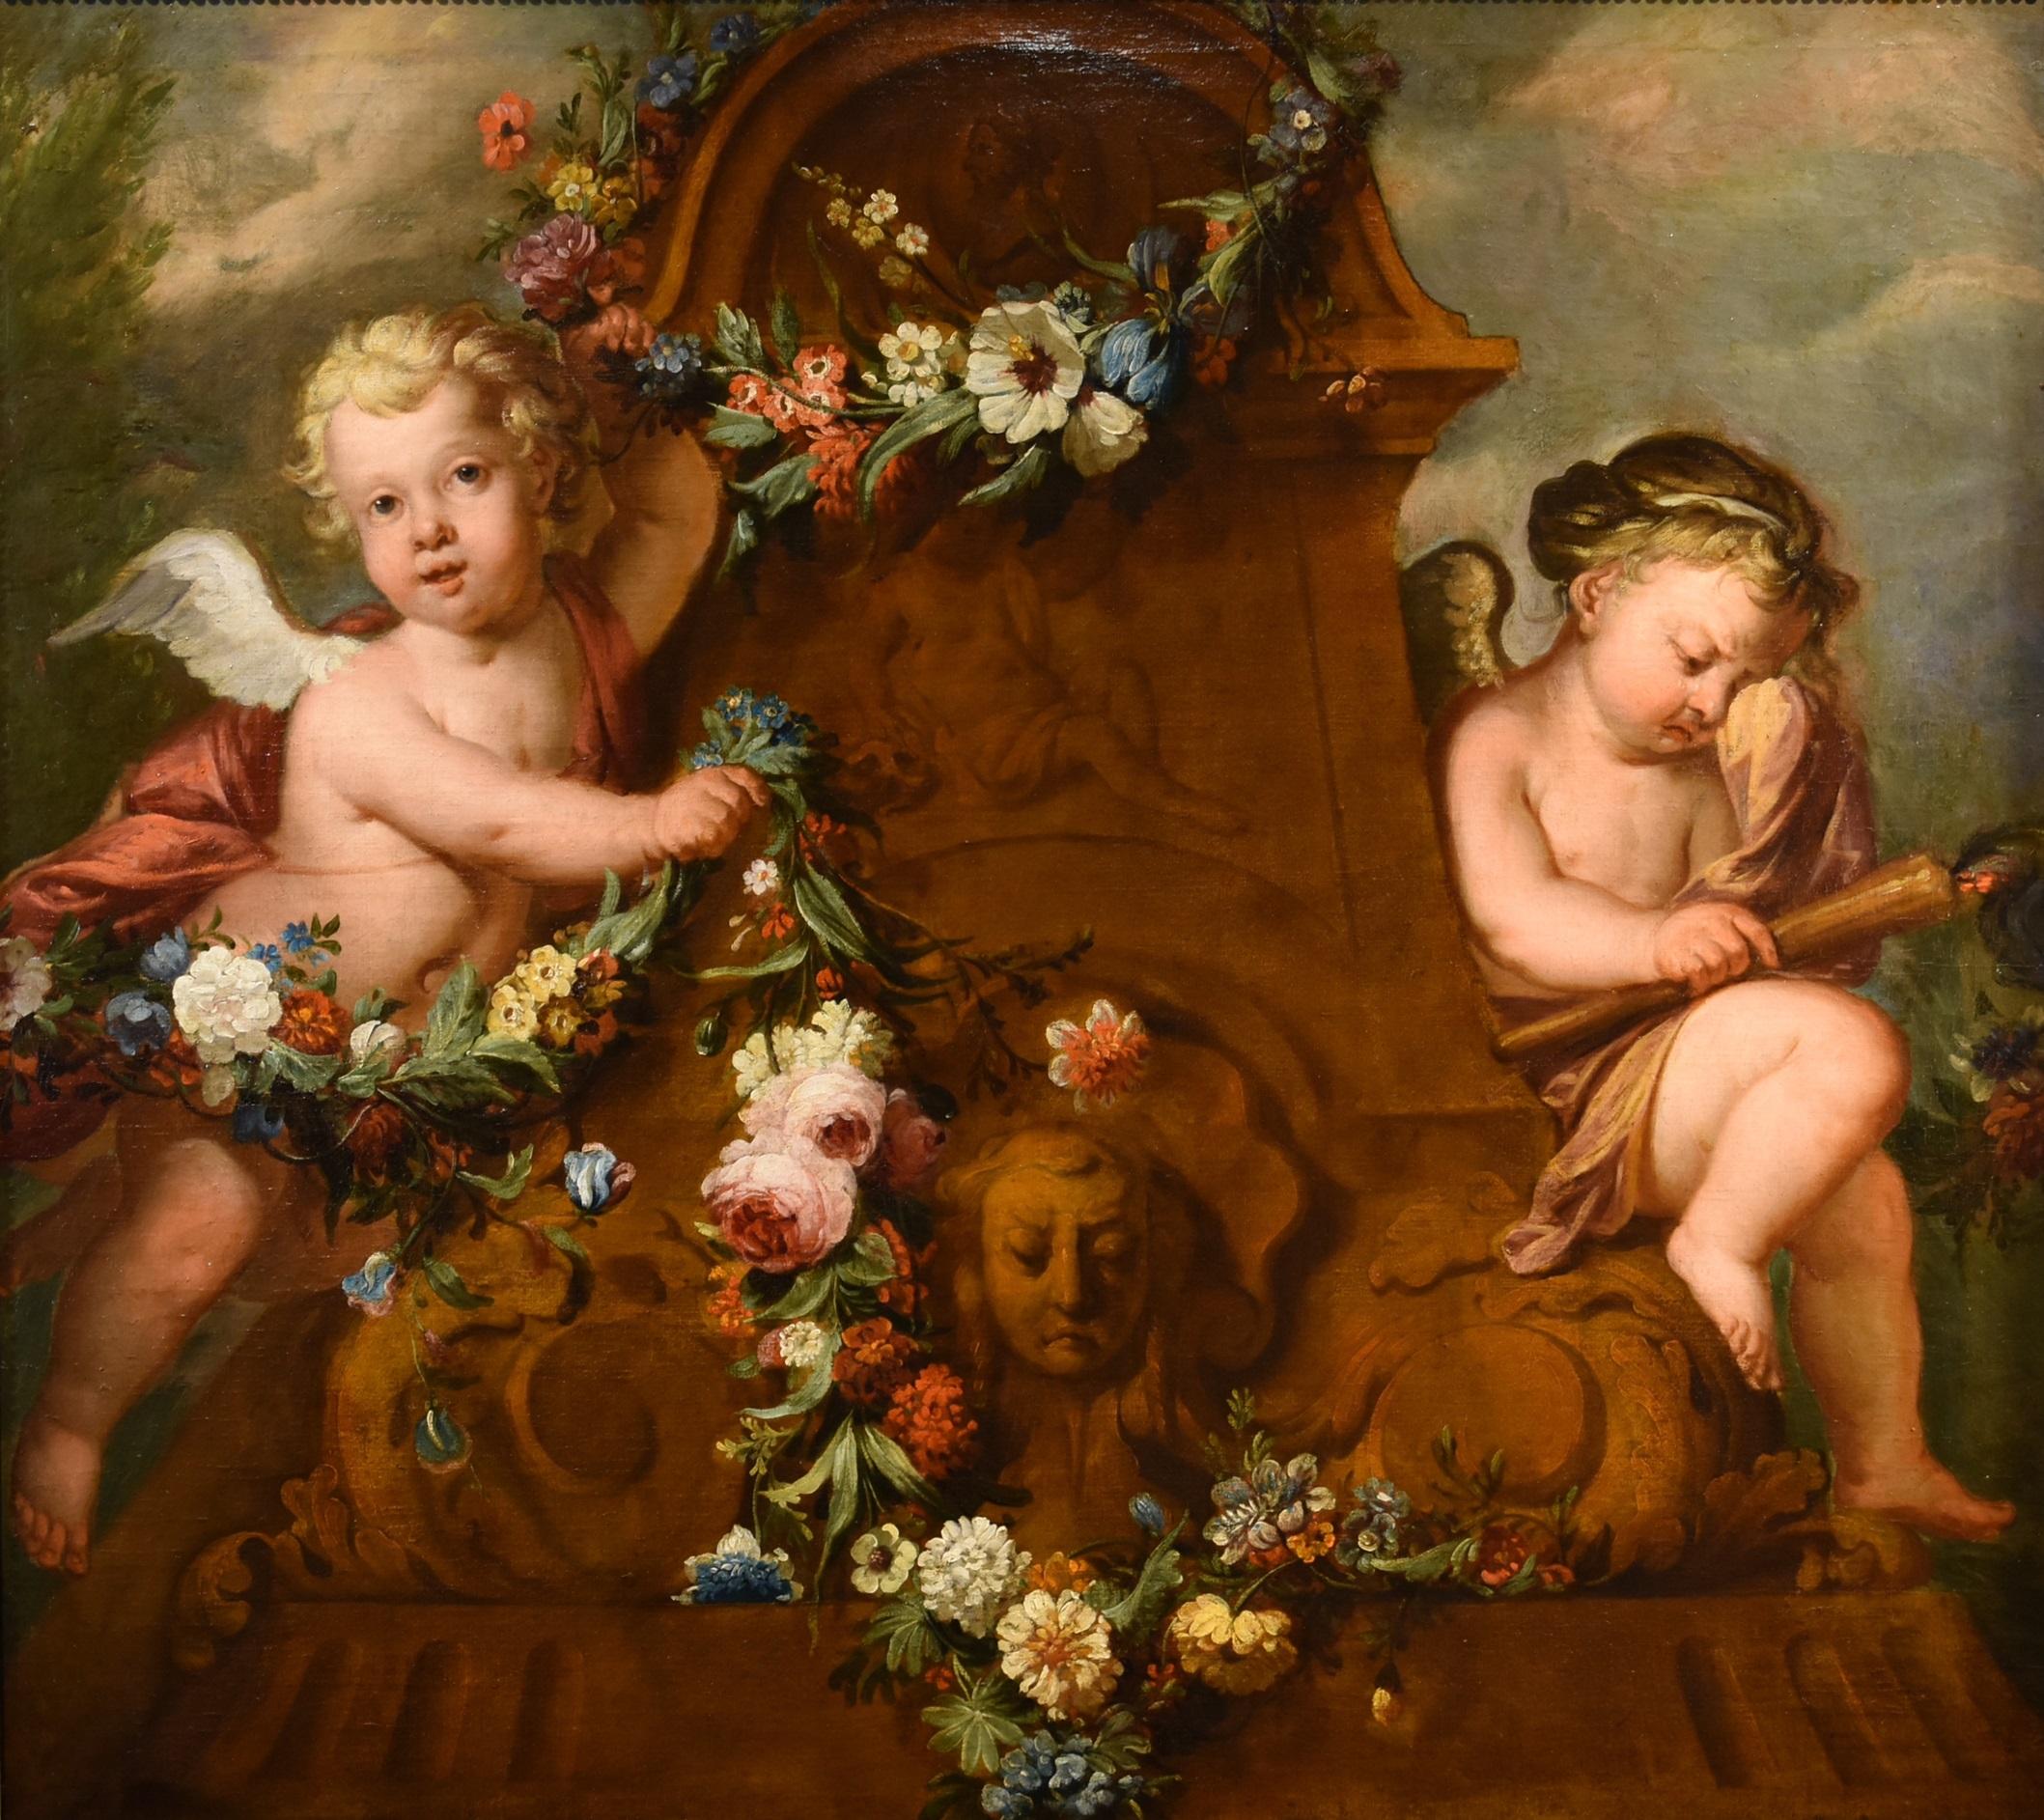 De Wit Blumenstillleben Gemälde Öl auf Leinwand 18. Jahrhundert Flemish Cupids Art (Alte Meister), Painting, von Jacob De Wit (Amsterdam, 1695 - 1754)